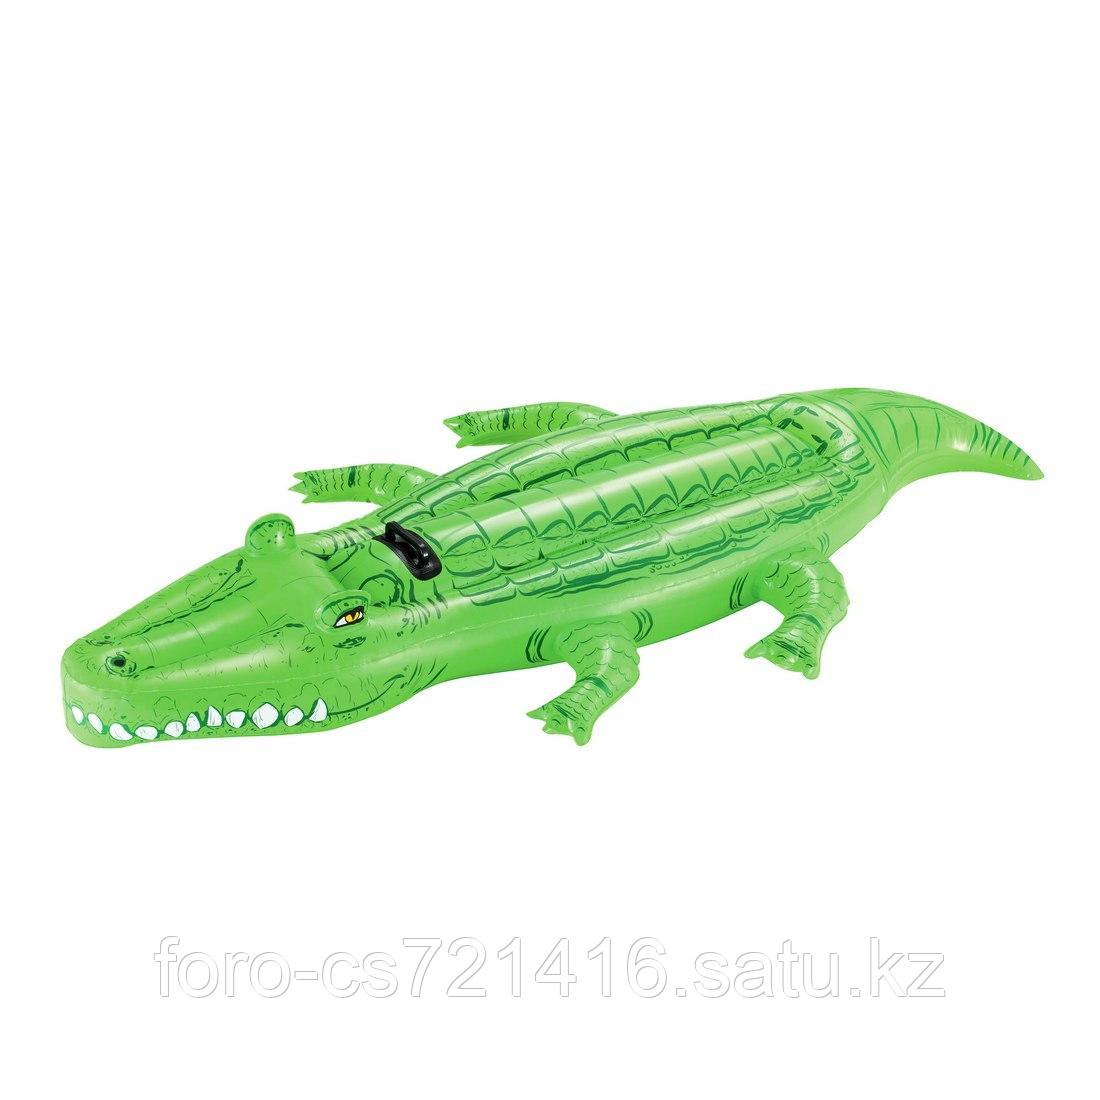 Надувная игрушка Bestway 41011 в форме крокодила для плавания